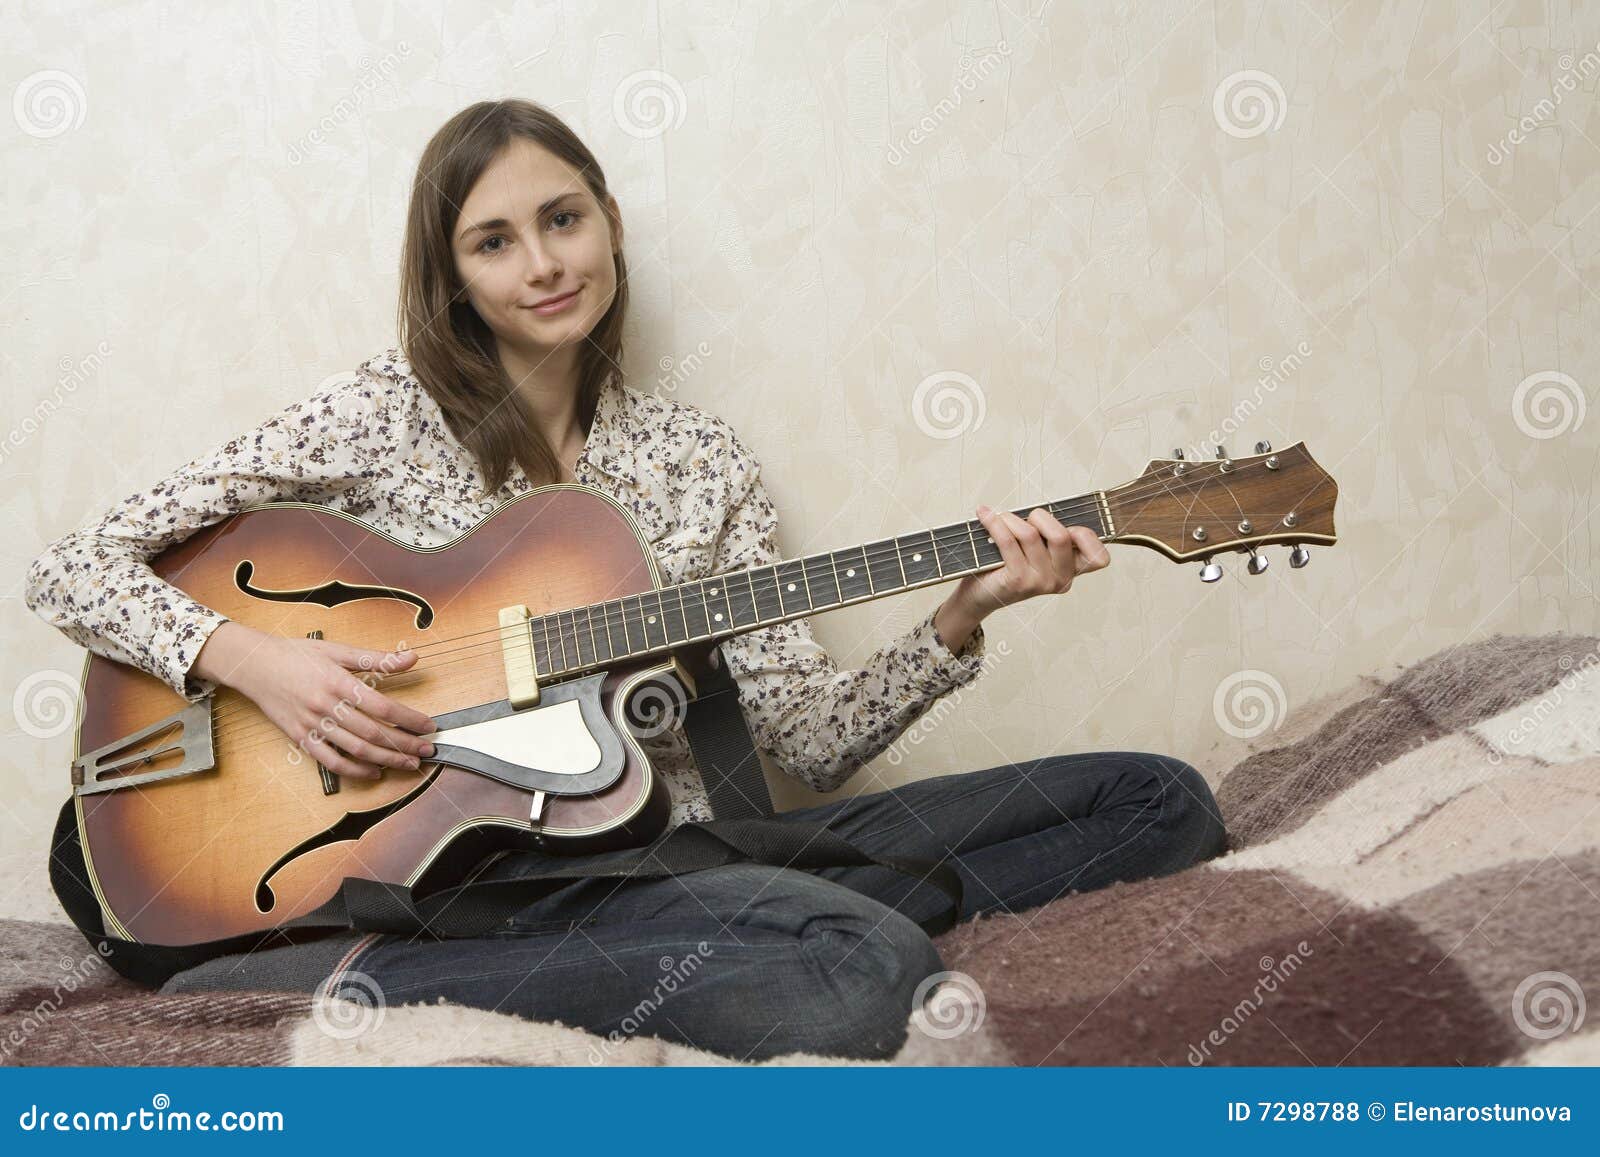 short hair woman blues guitar tabs